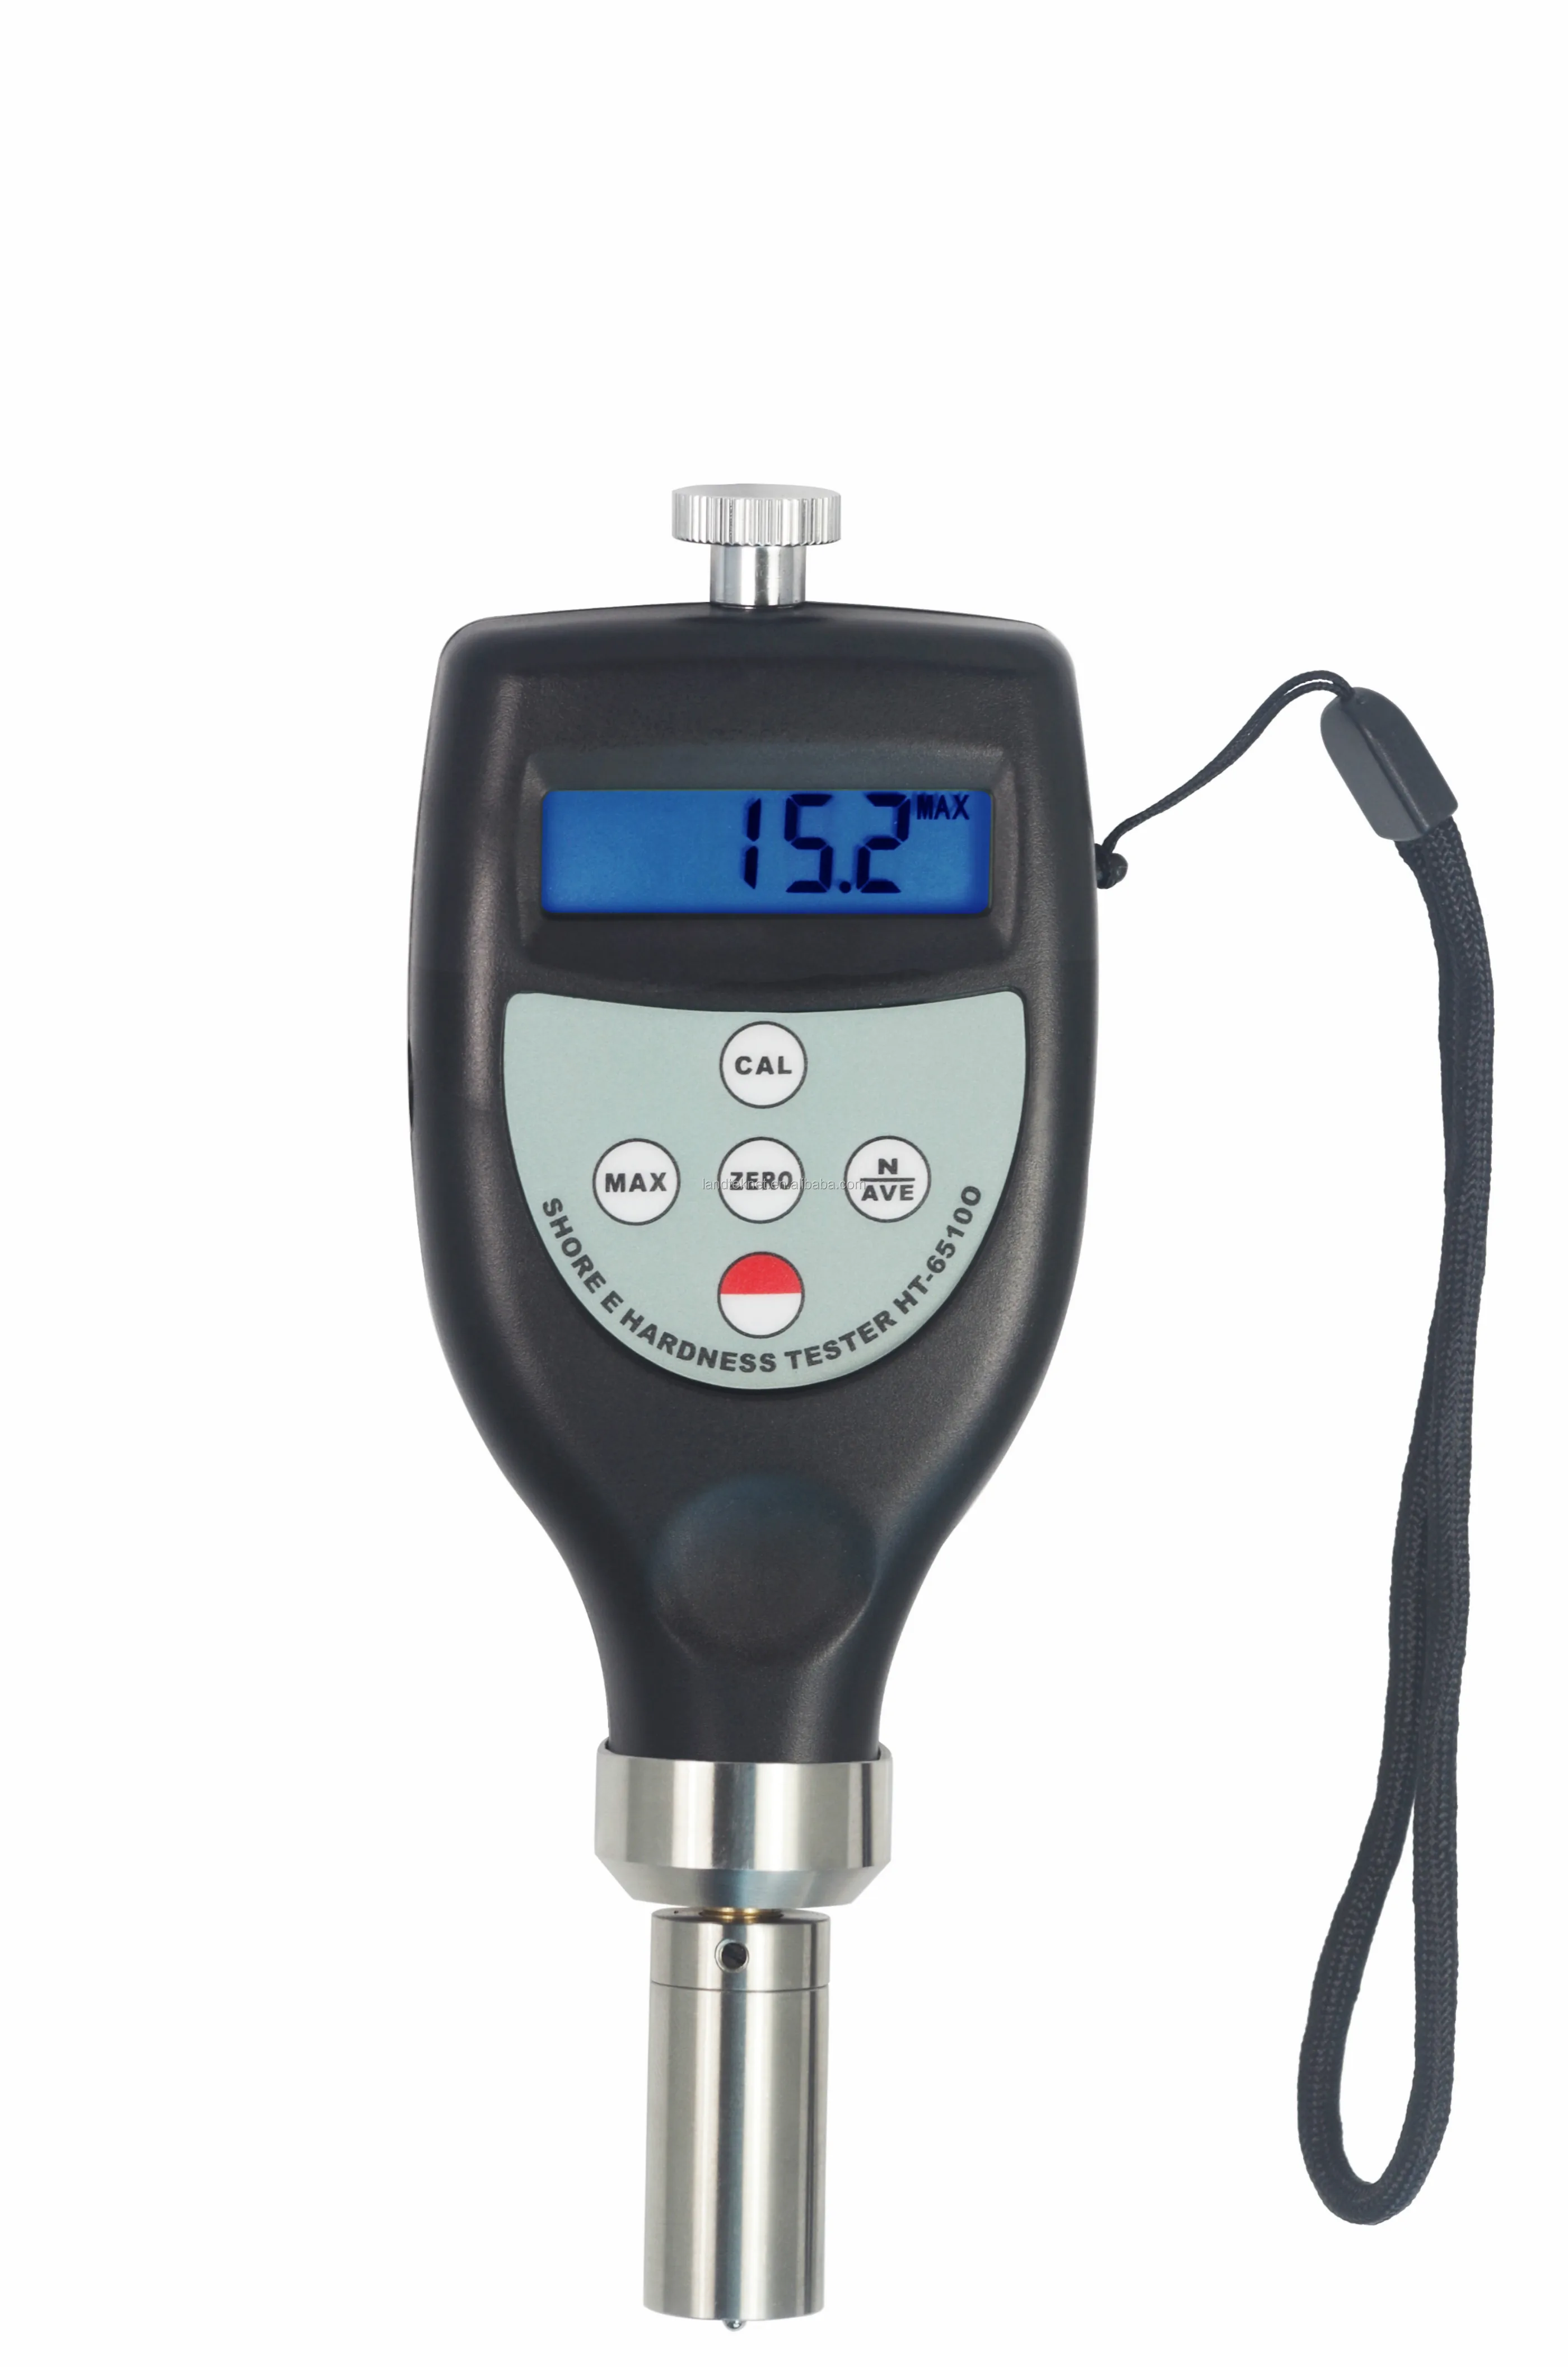 Digital Shore Hardness Tester  Hardness Meter  Shore DO  Durometer  HT-6510DO  0~100HDO